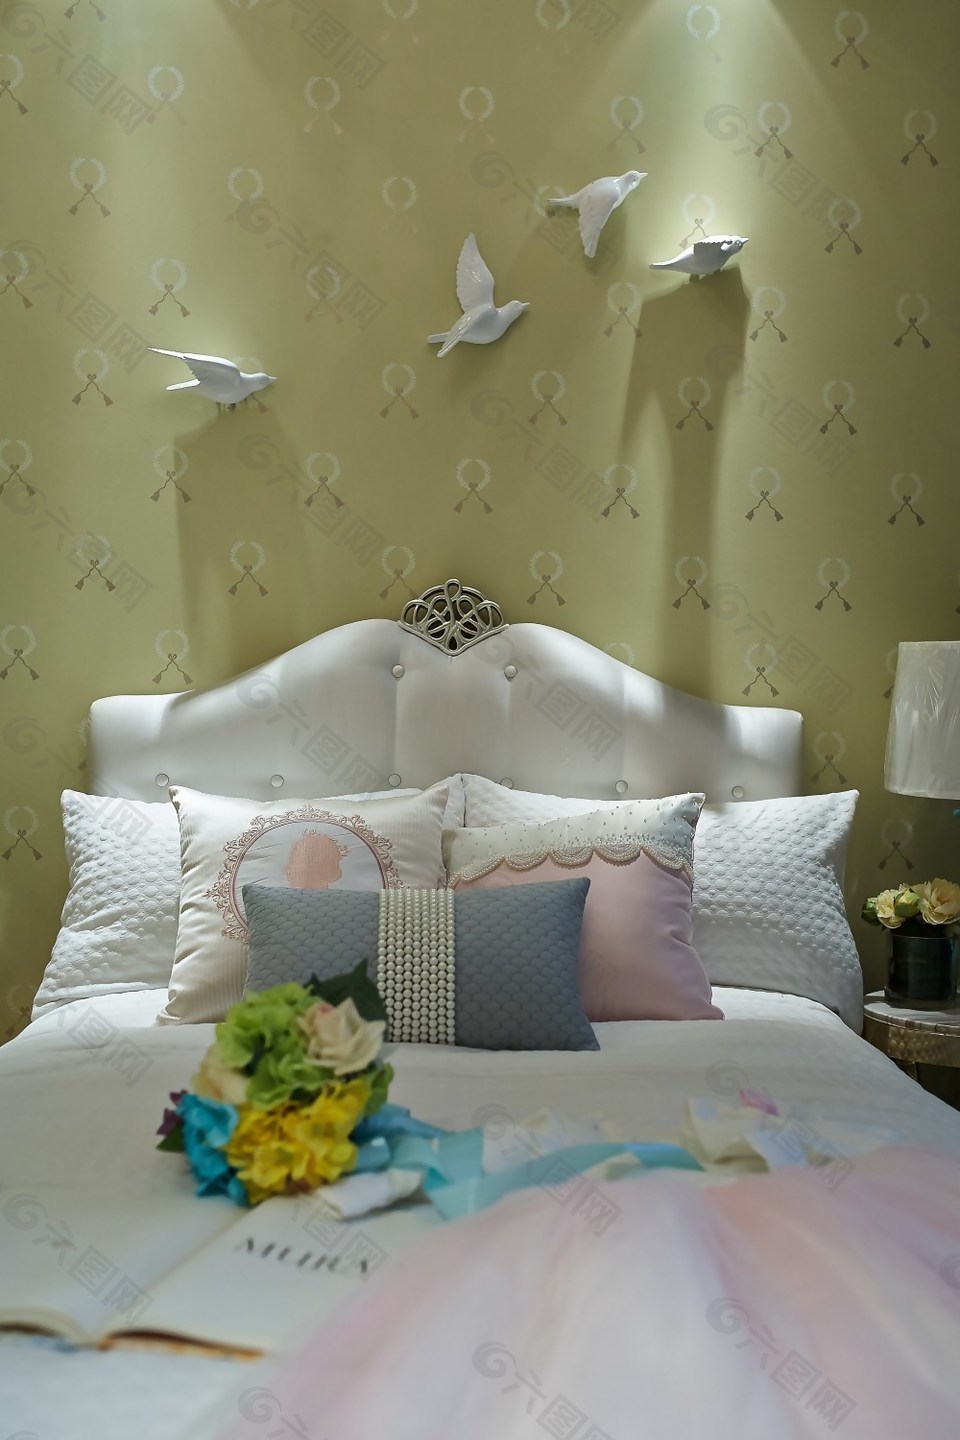 现代时尚田园风格卧室壁纸装饰设计效果图